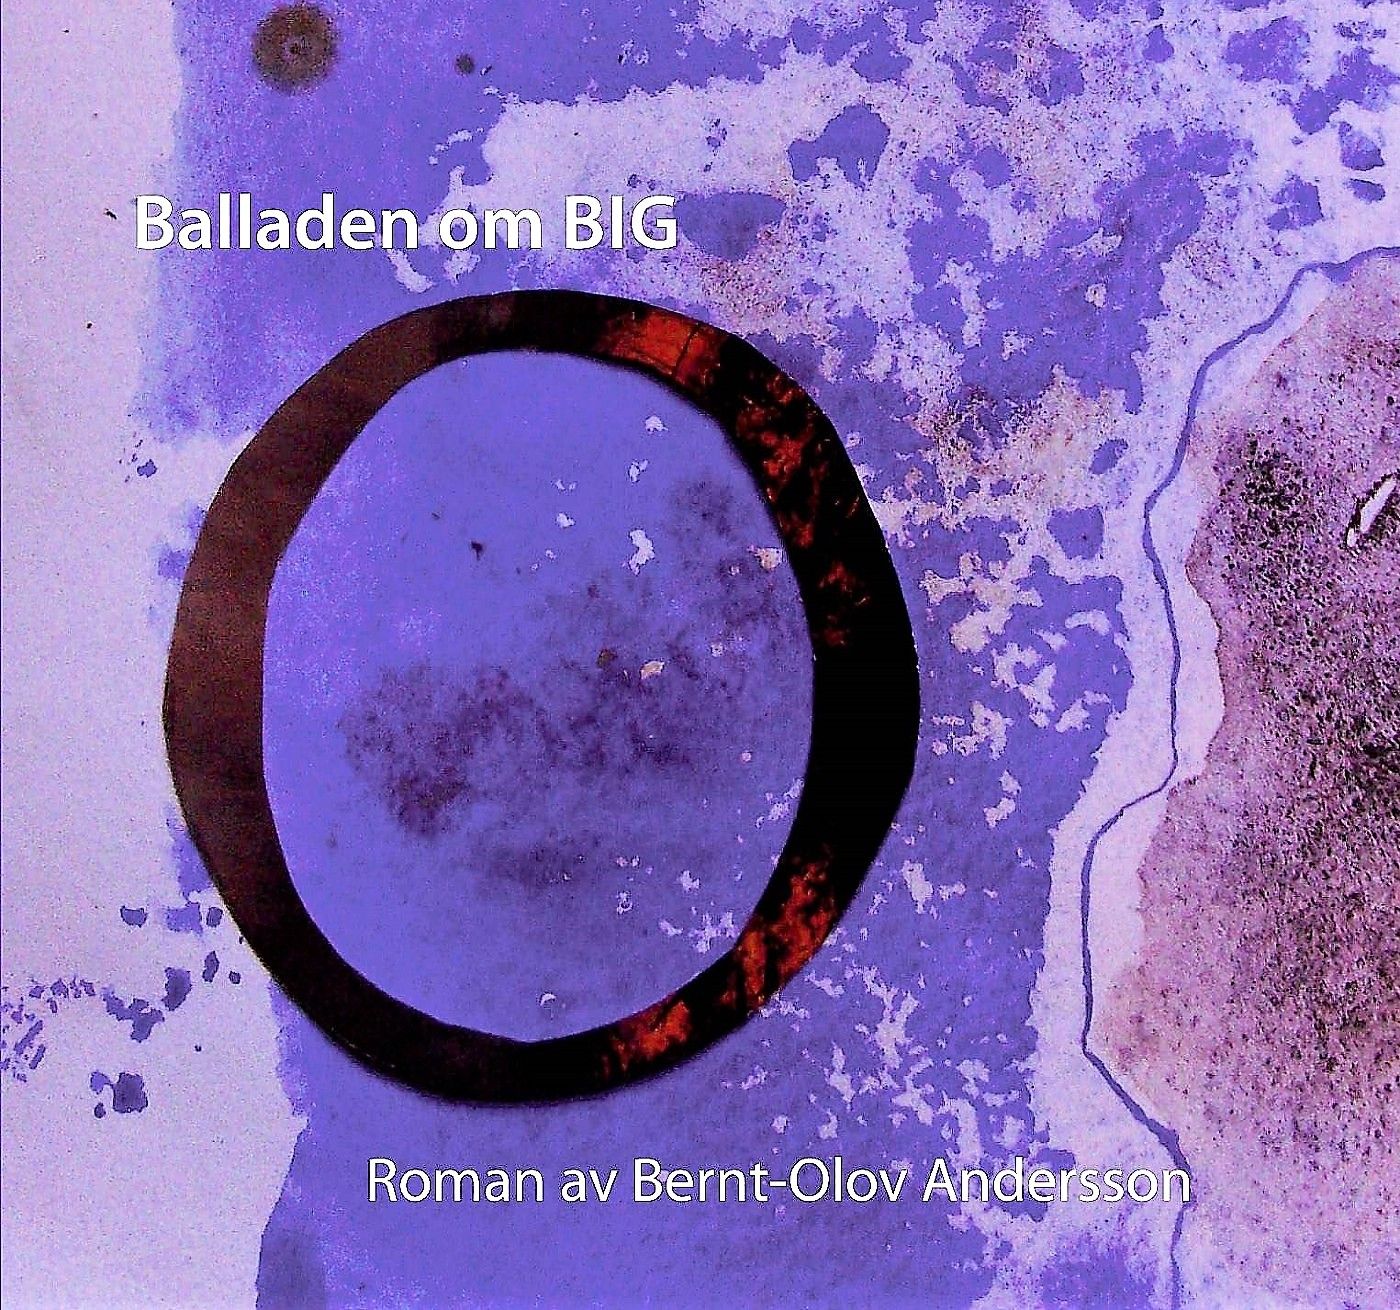 Balladen om Big O, ljudbok av Bernt-Olov Andersson